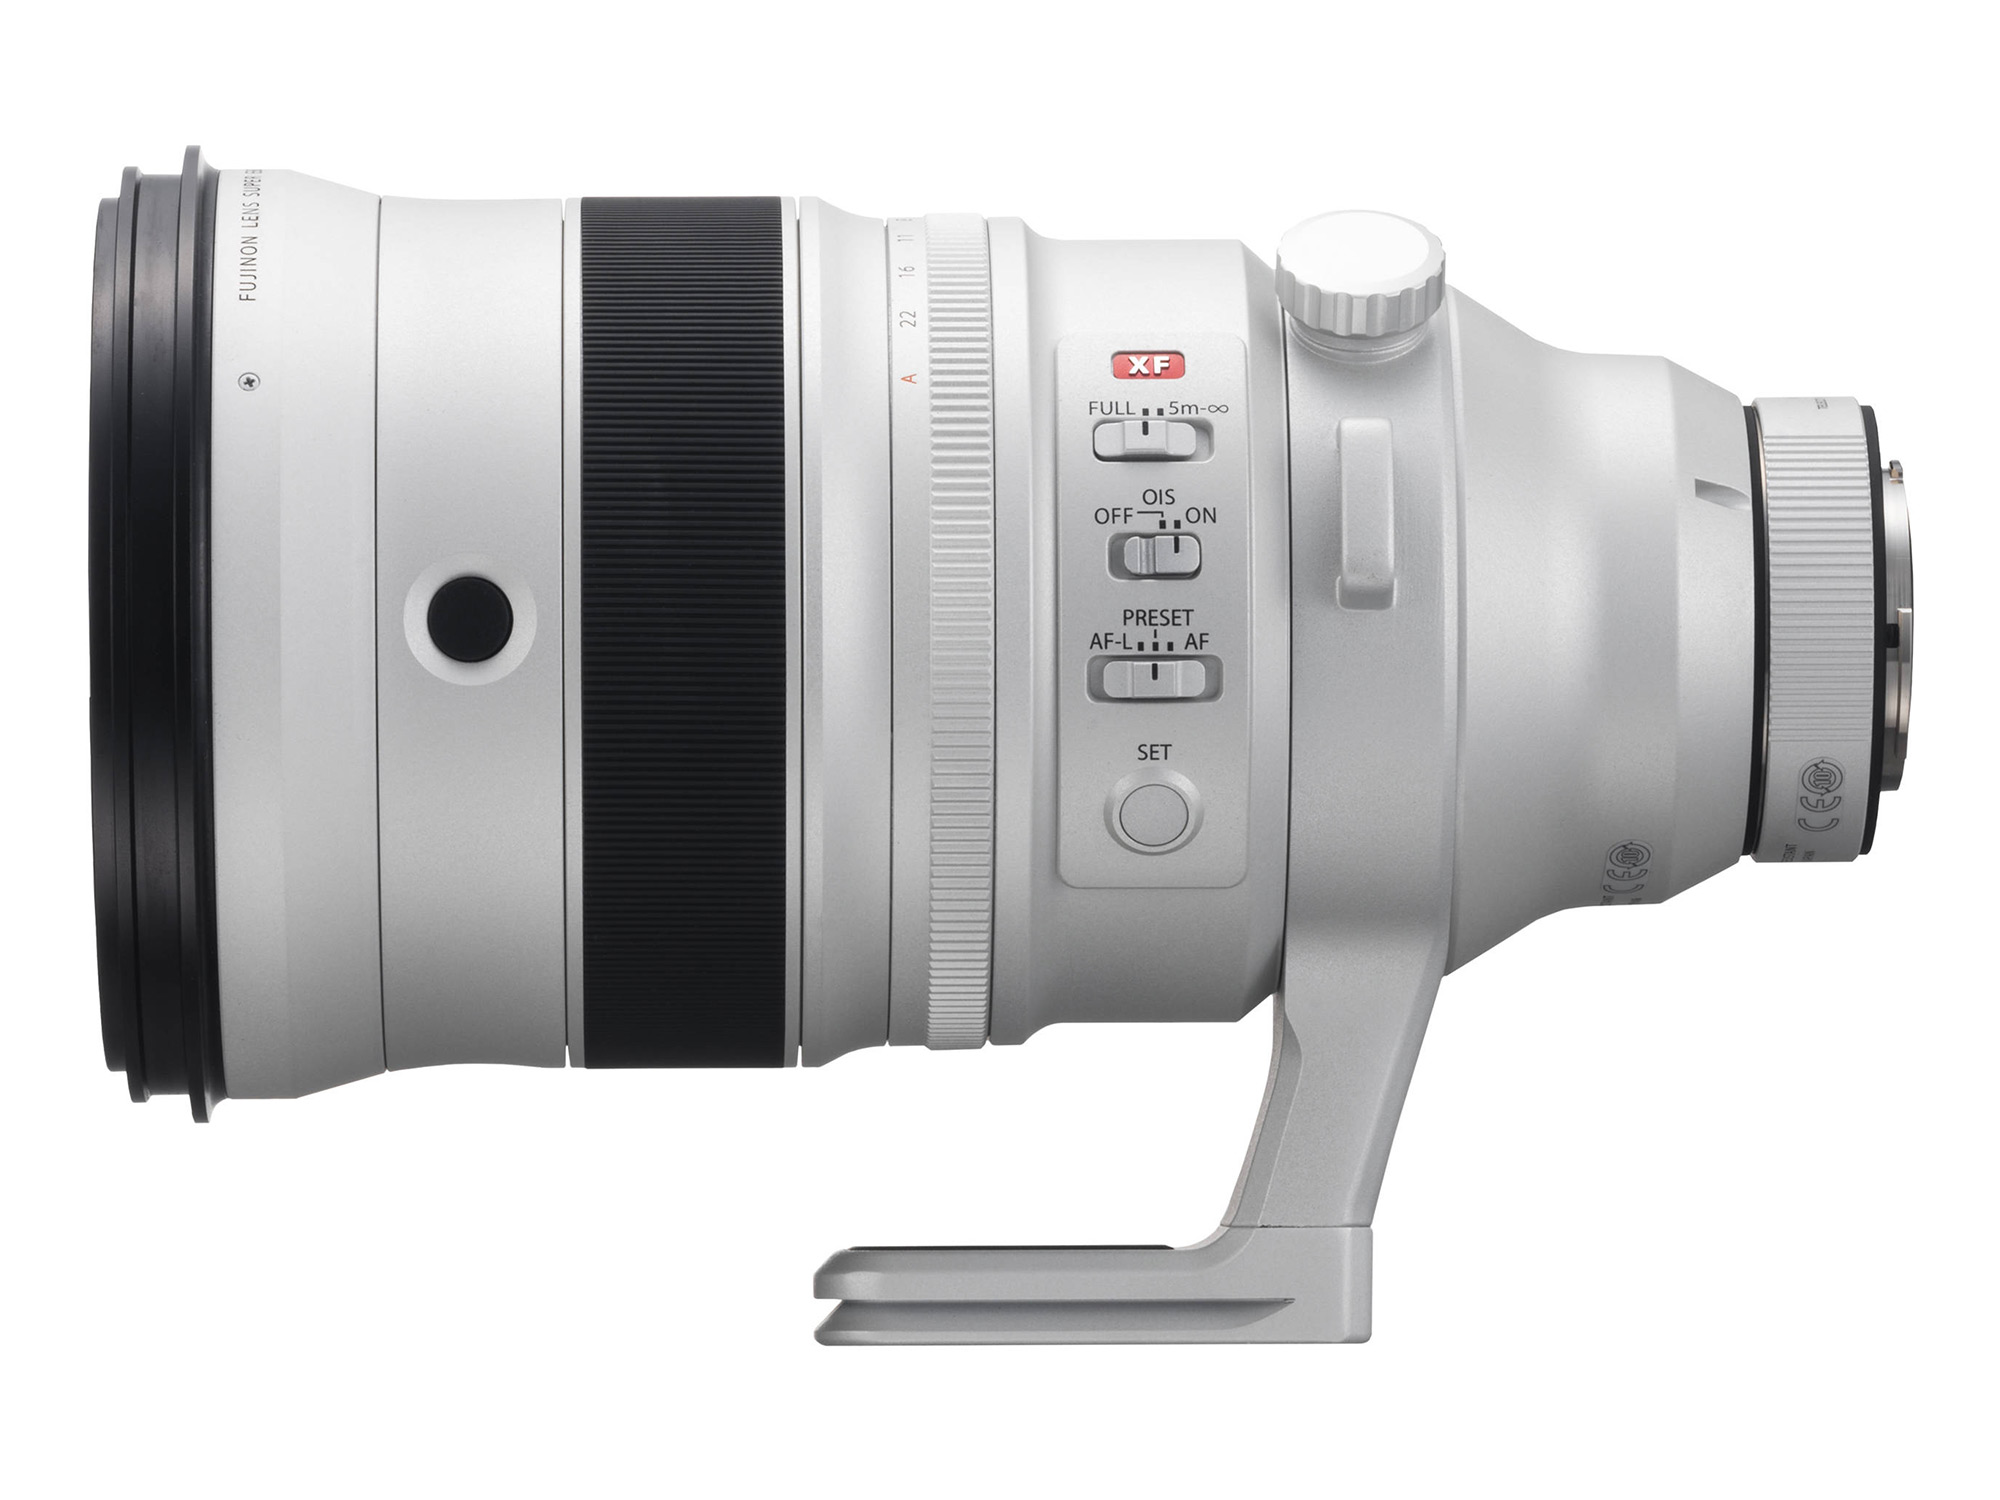 Fuji XF 200mm f/2 OIS WR Lens with XF 1.4x TC F2 WR Teleconverter Kit